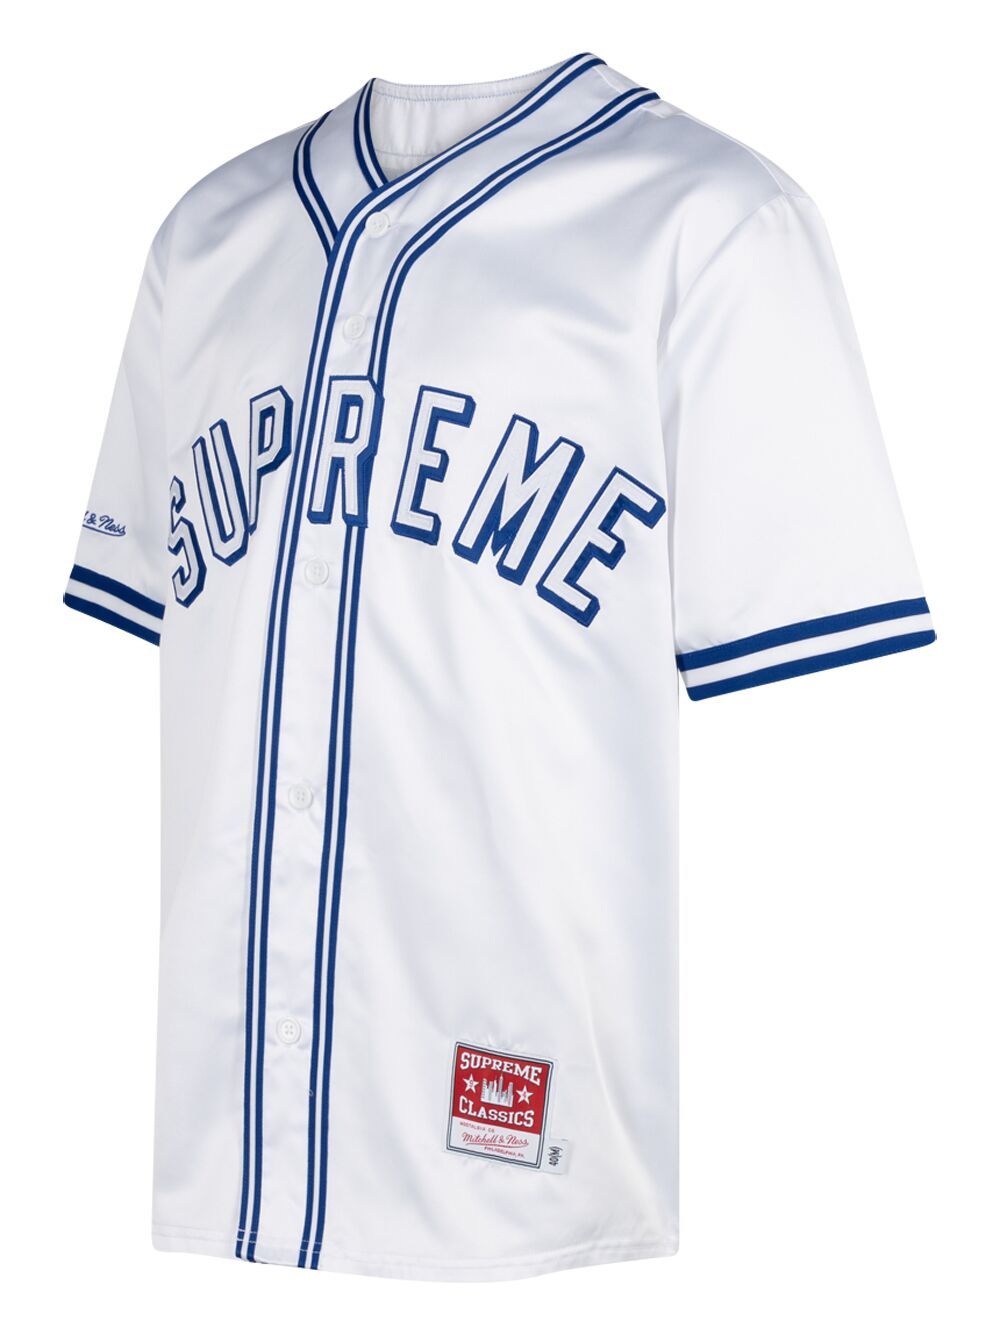 Mitchell & Ness x Supreme Baseball Jersey - Cream